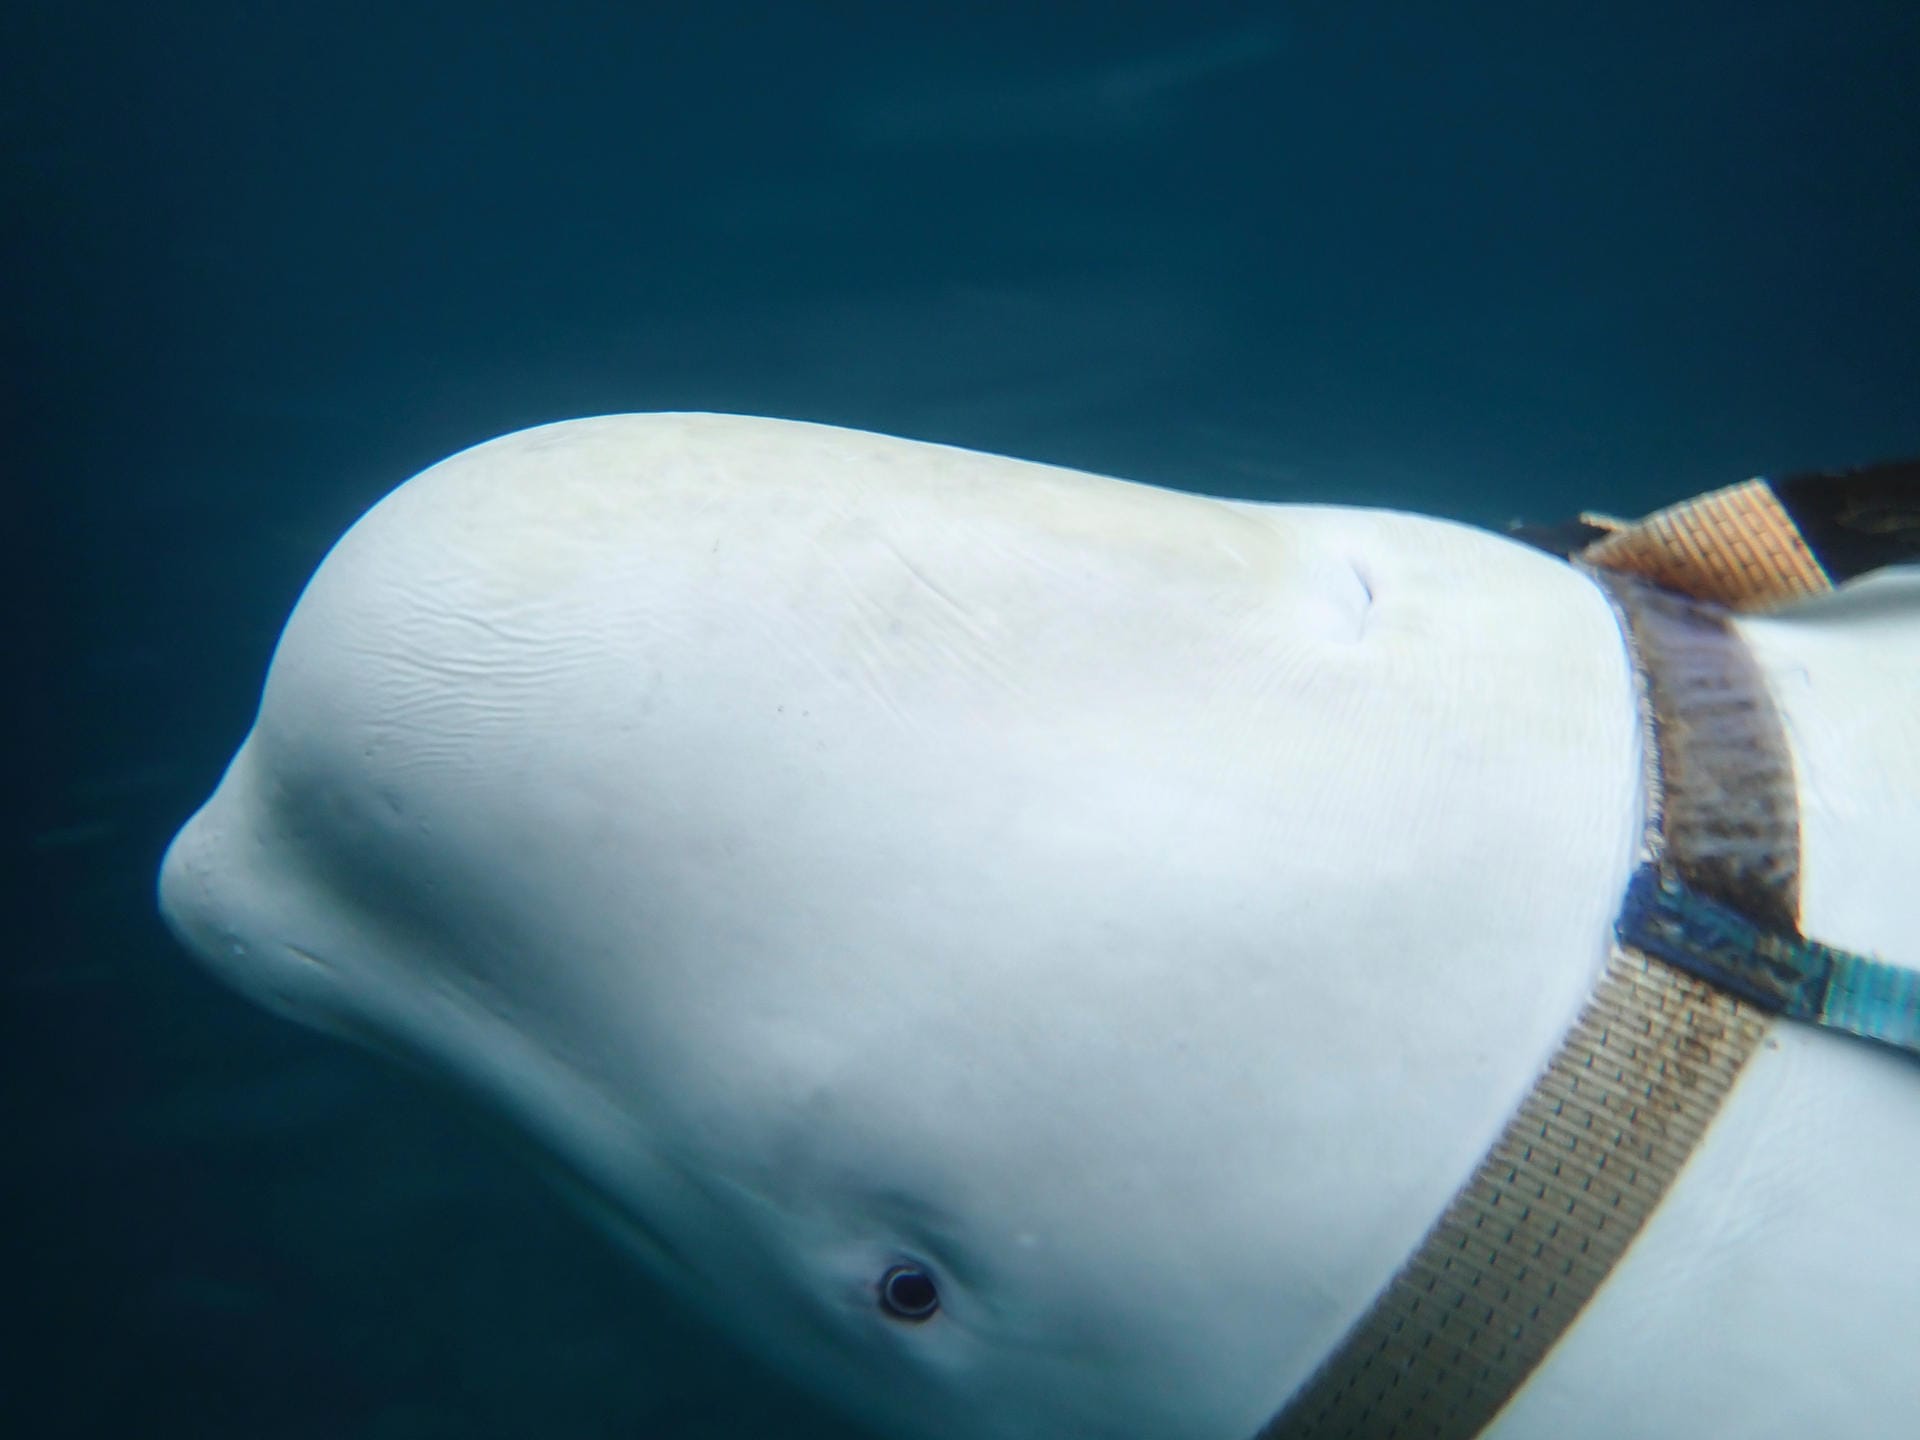 Eine Unterwasseraufnahme des Wals: Dieser Beluga-Wal könnte als Geheimwaffe von Russland eingesetzt werden. An dem Geschirr sind vermutlich Waffen oder eine Kamera angebracht worden.